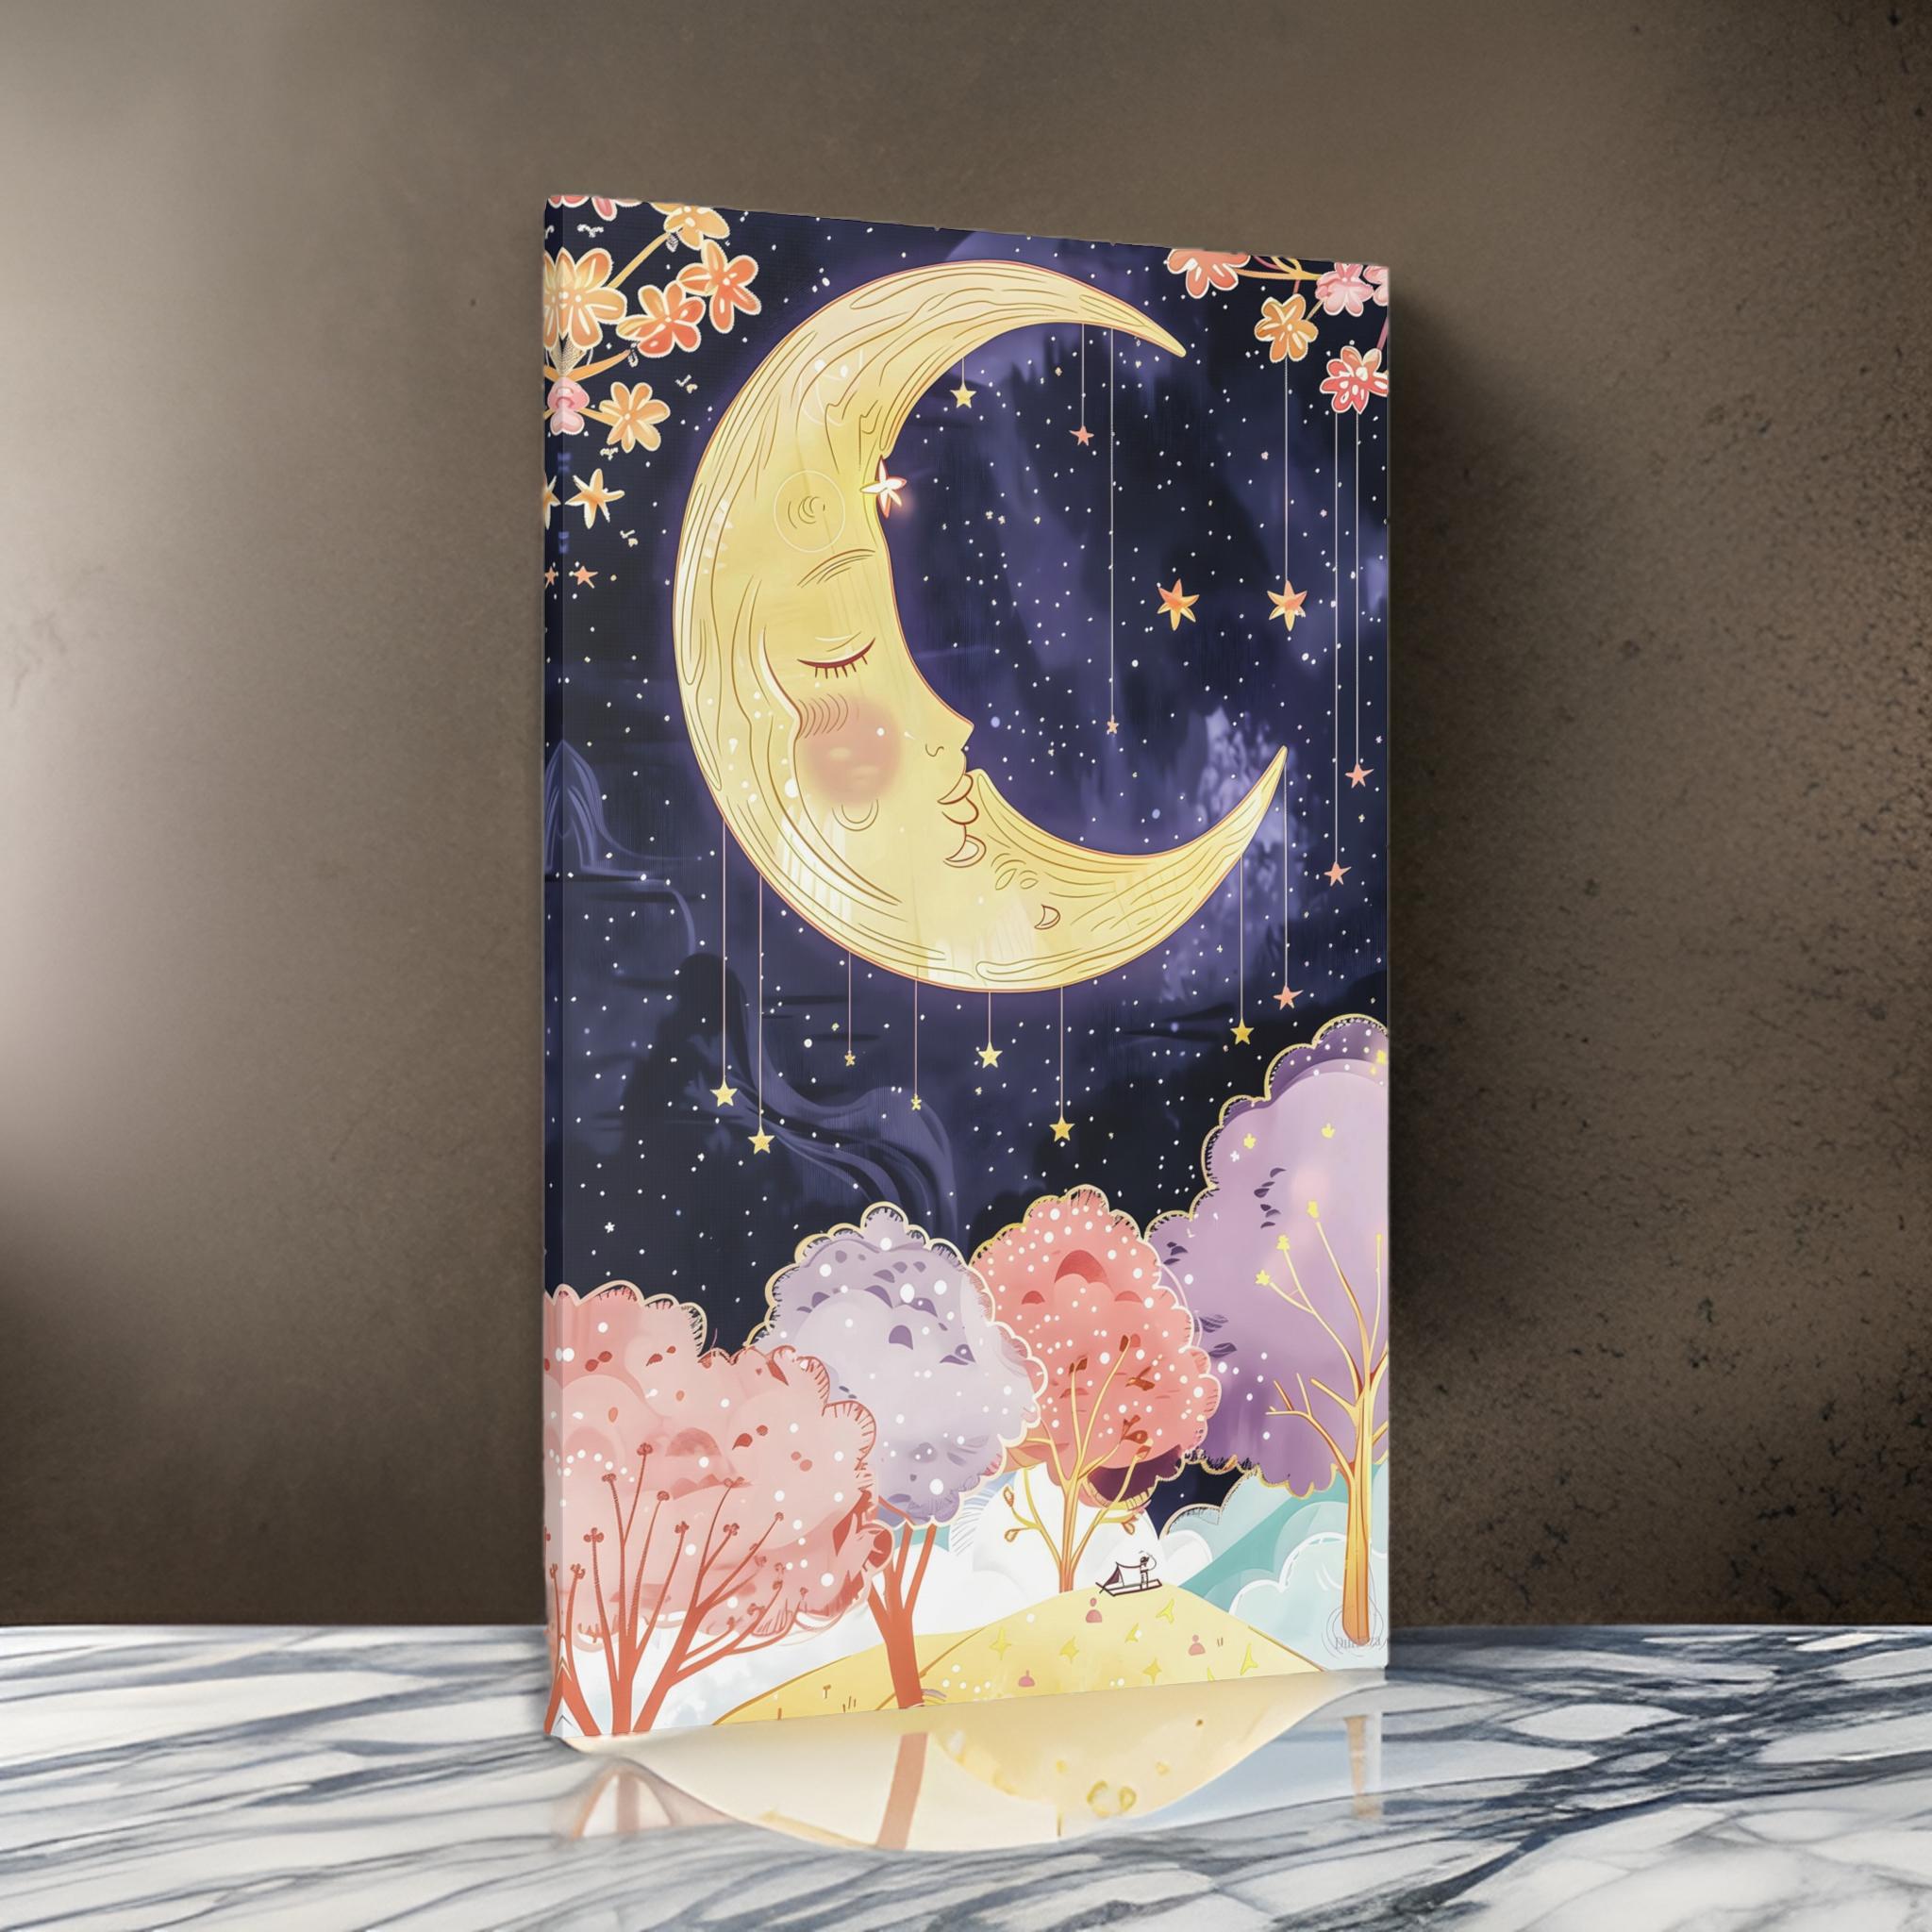 Lullaby Moon Wall Art: Whimsical Fairytale Decor